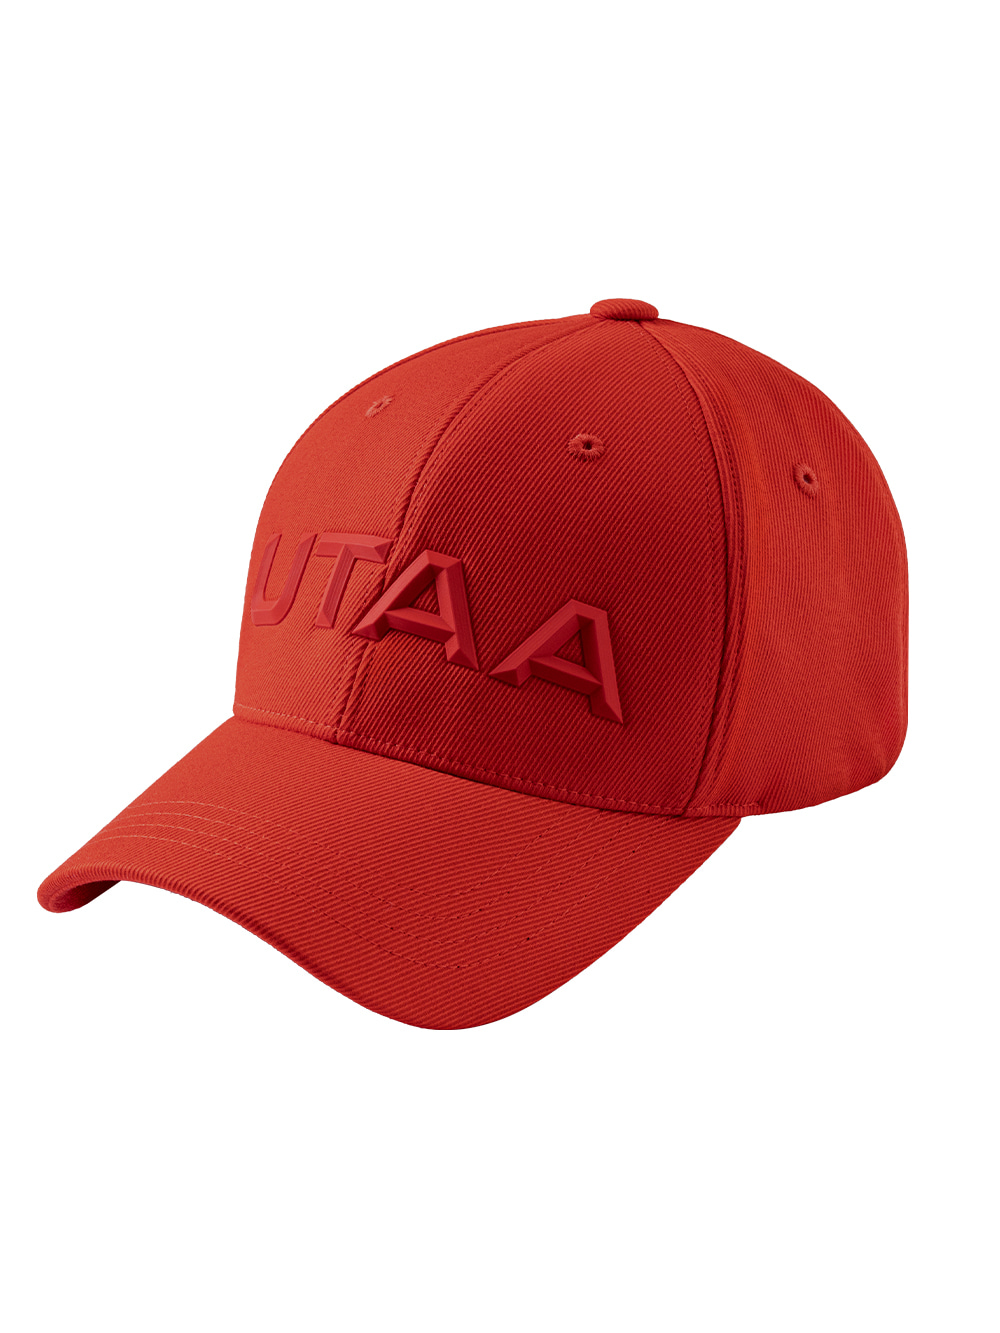 UTAA Figure Basic Cap : Red  (UB0GCU112RD)